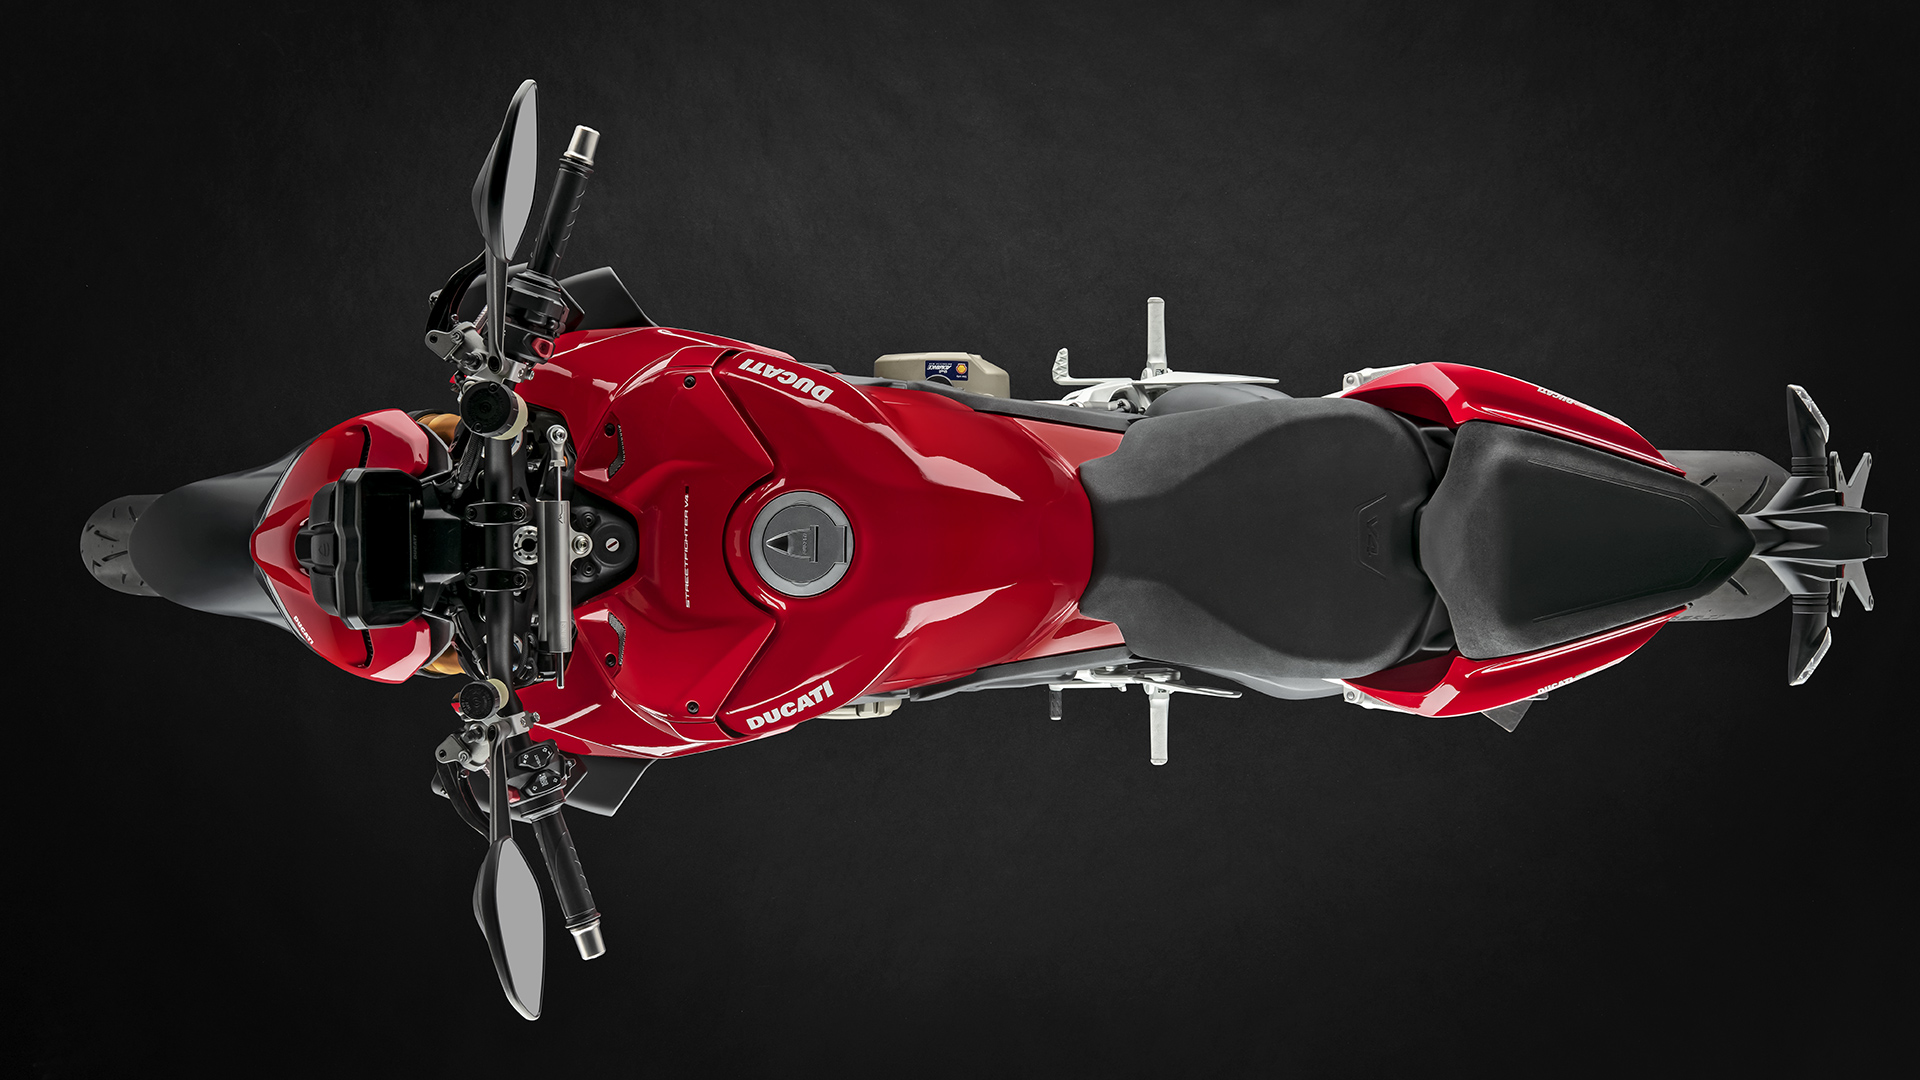 Nova Ducati Streetfighter V4 S 2022